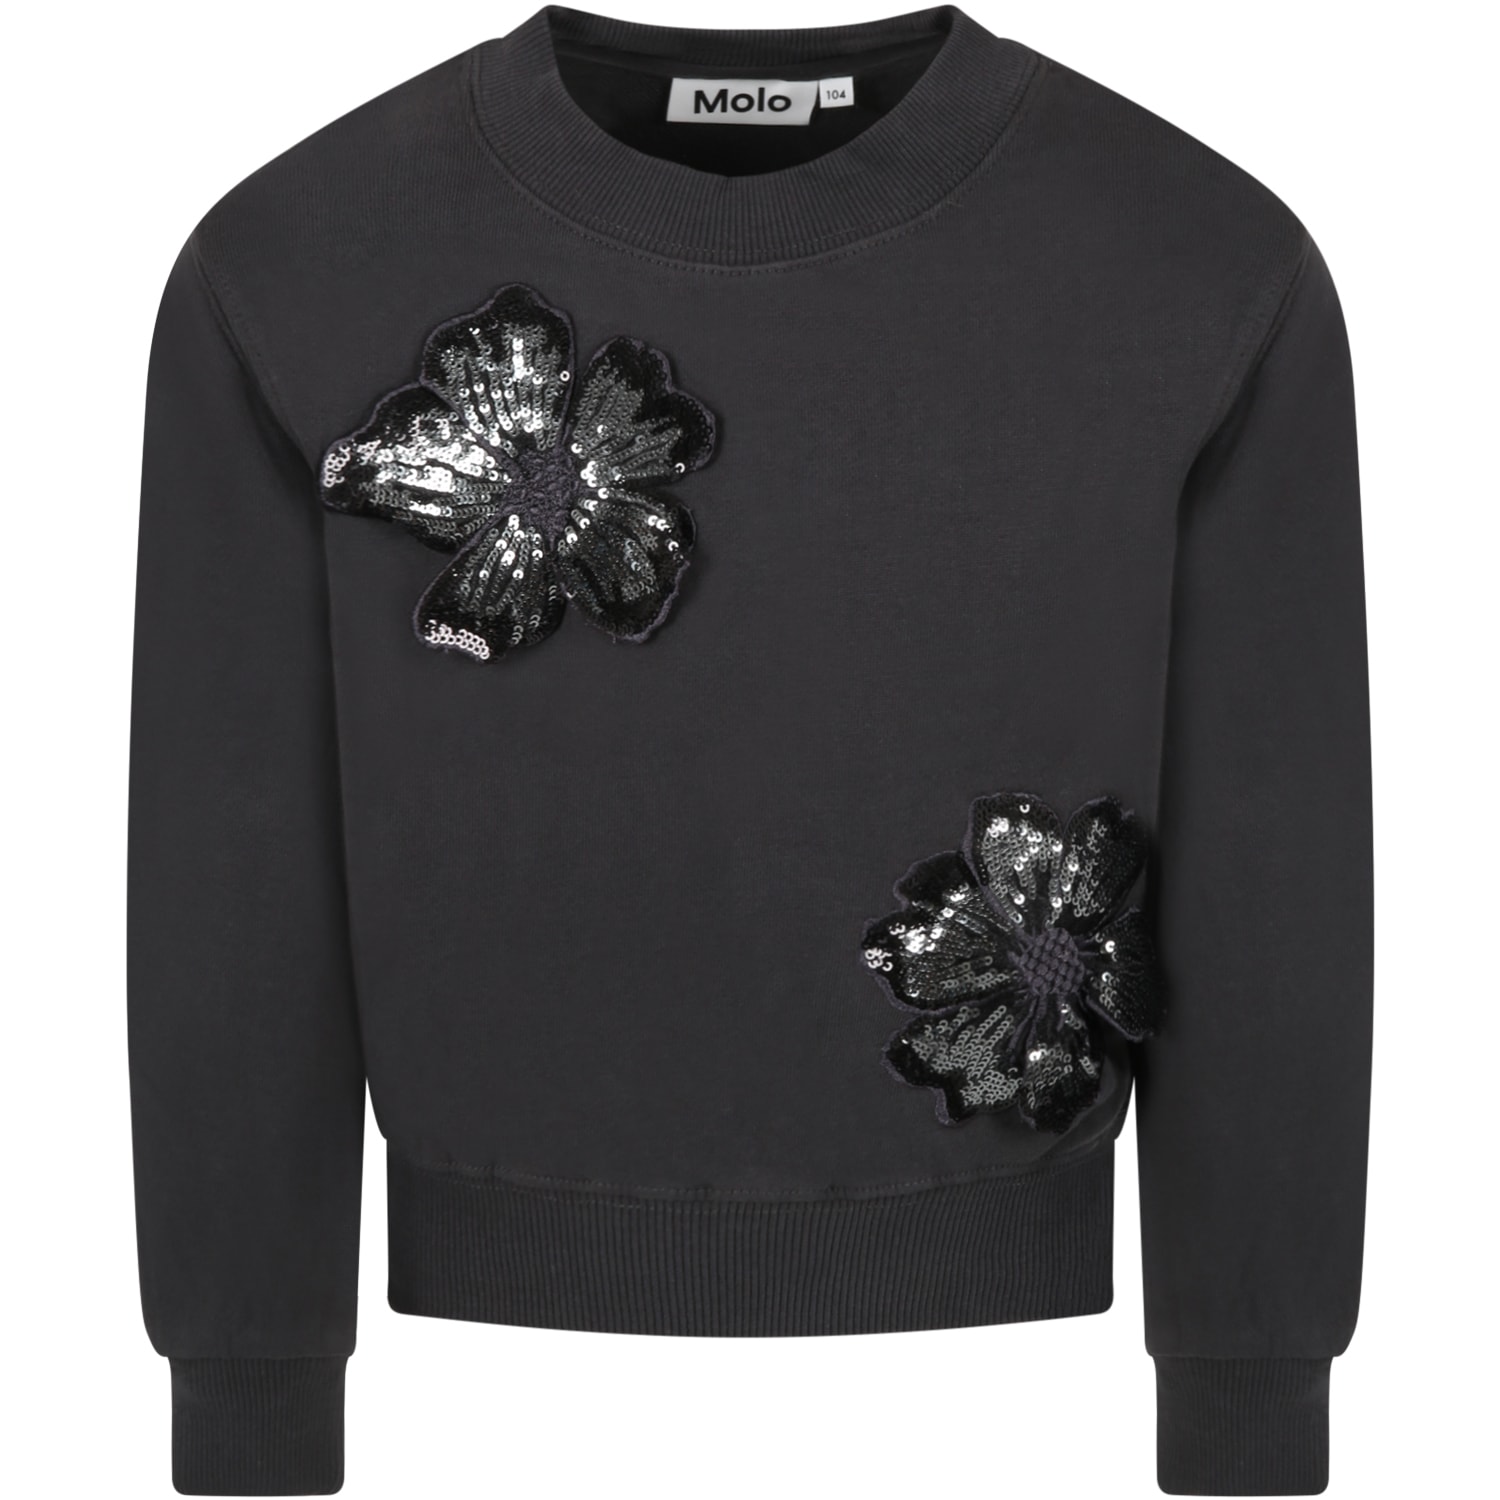 Molo Grey Sweatshirt For Girl With Flowers